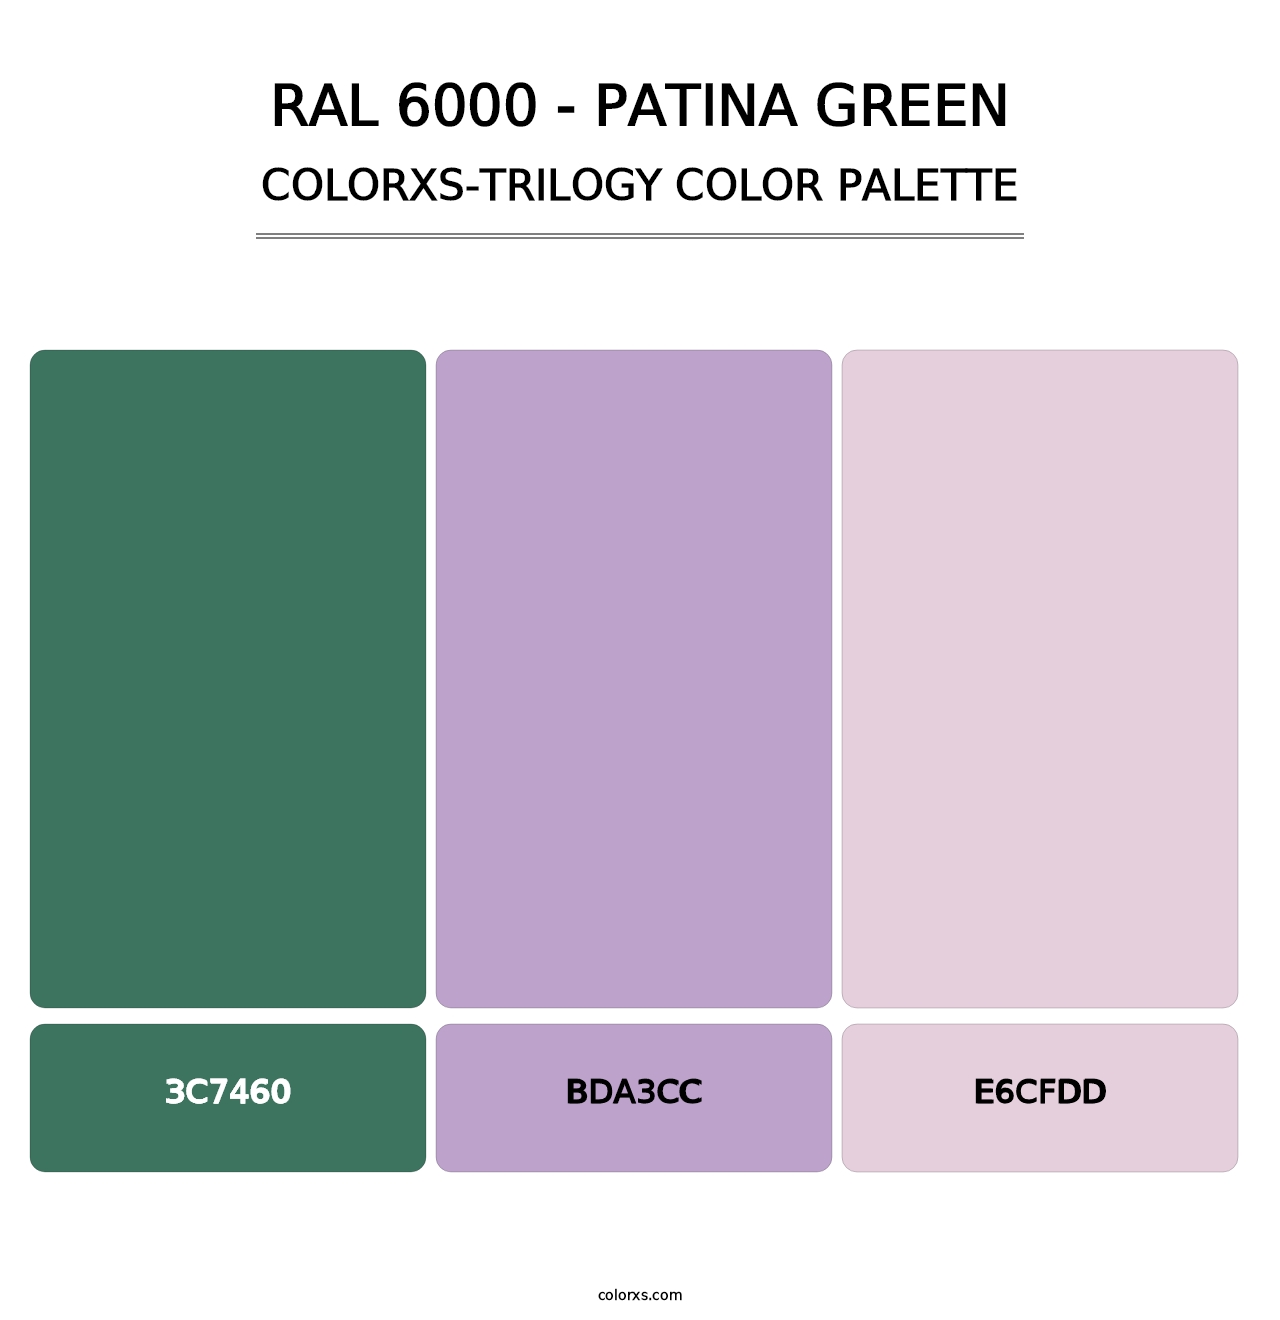 RAL 6000 - Patina Green - Colorxs Trilogy Palette